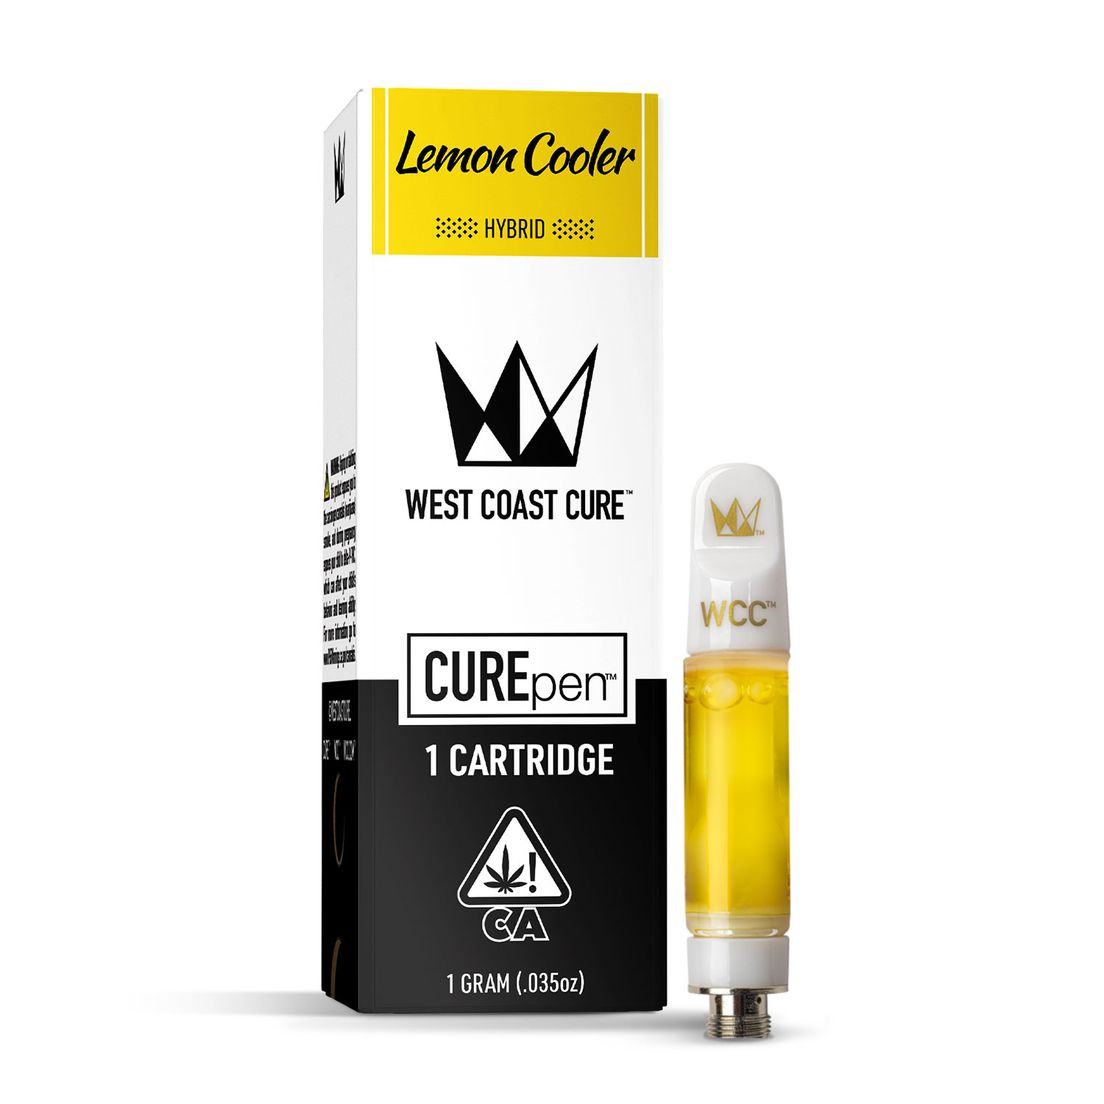 Lemon Cooler - 1G CUREpen Cartridge